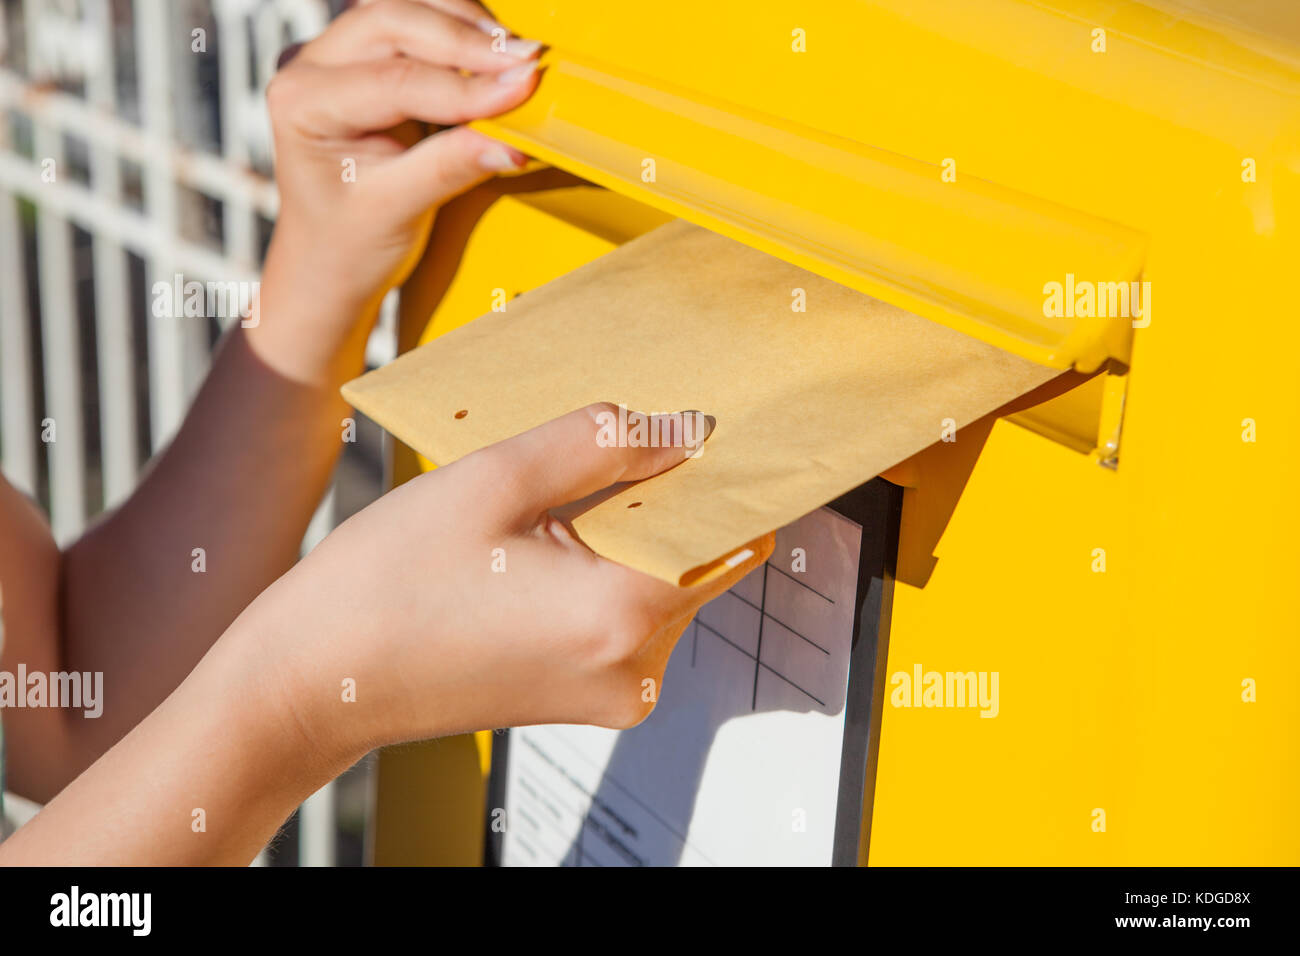 Close-up of woman's hand inserting enveloppe dans la boîte aux lettres Banque D'Images